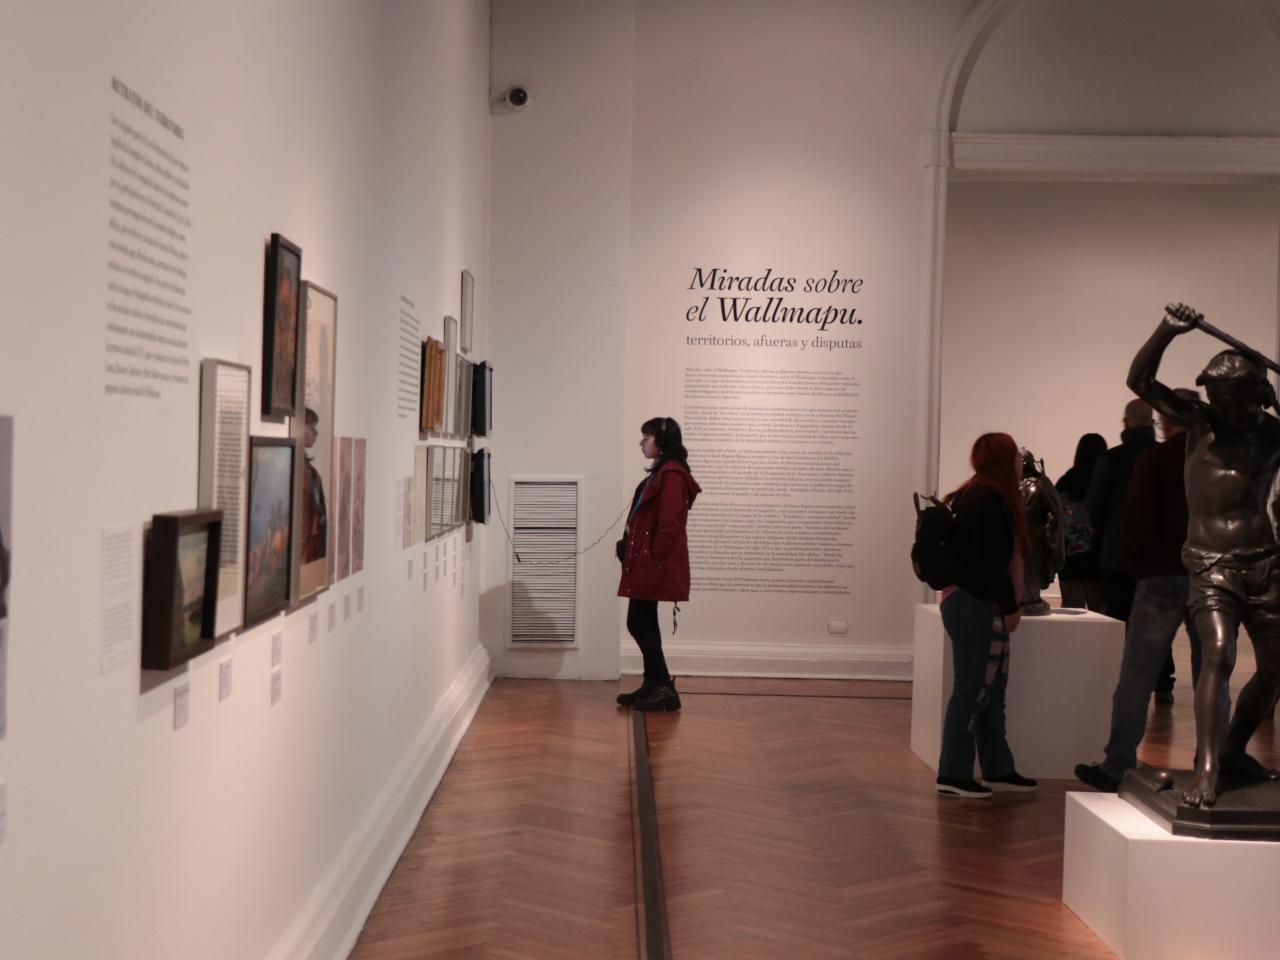 Una mujer con una chaqueta larga de color burdeo mirando la exposición